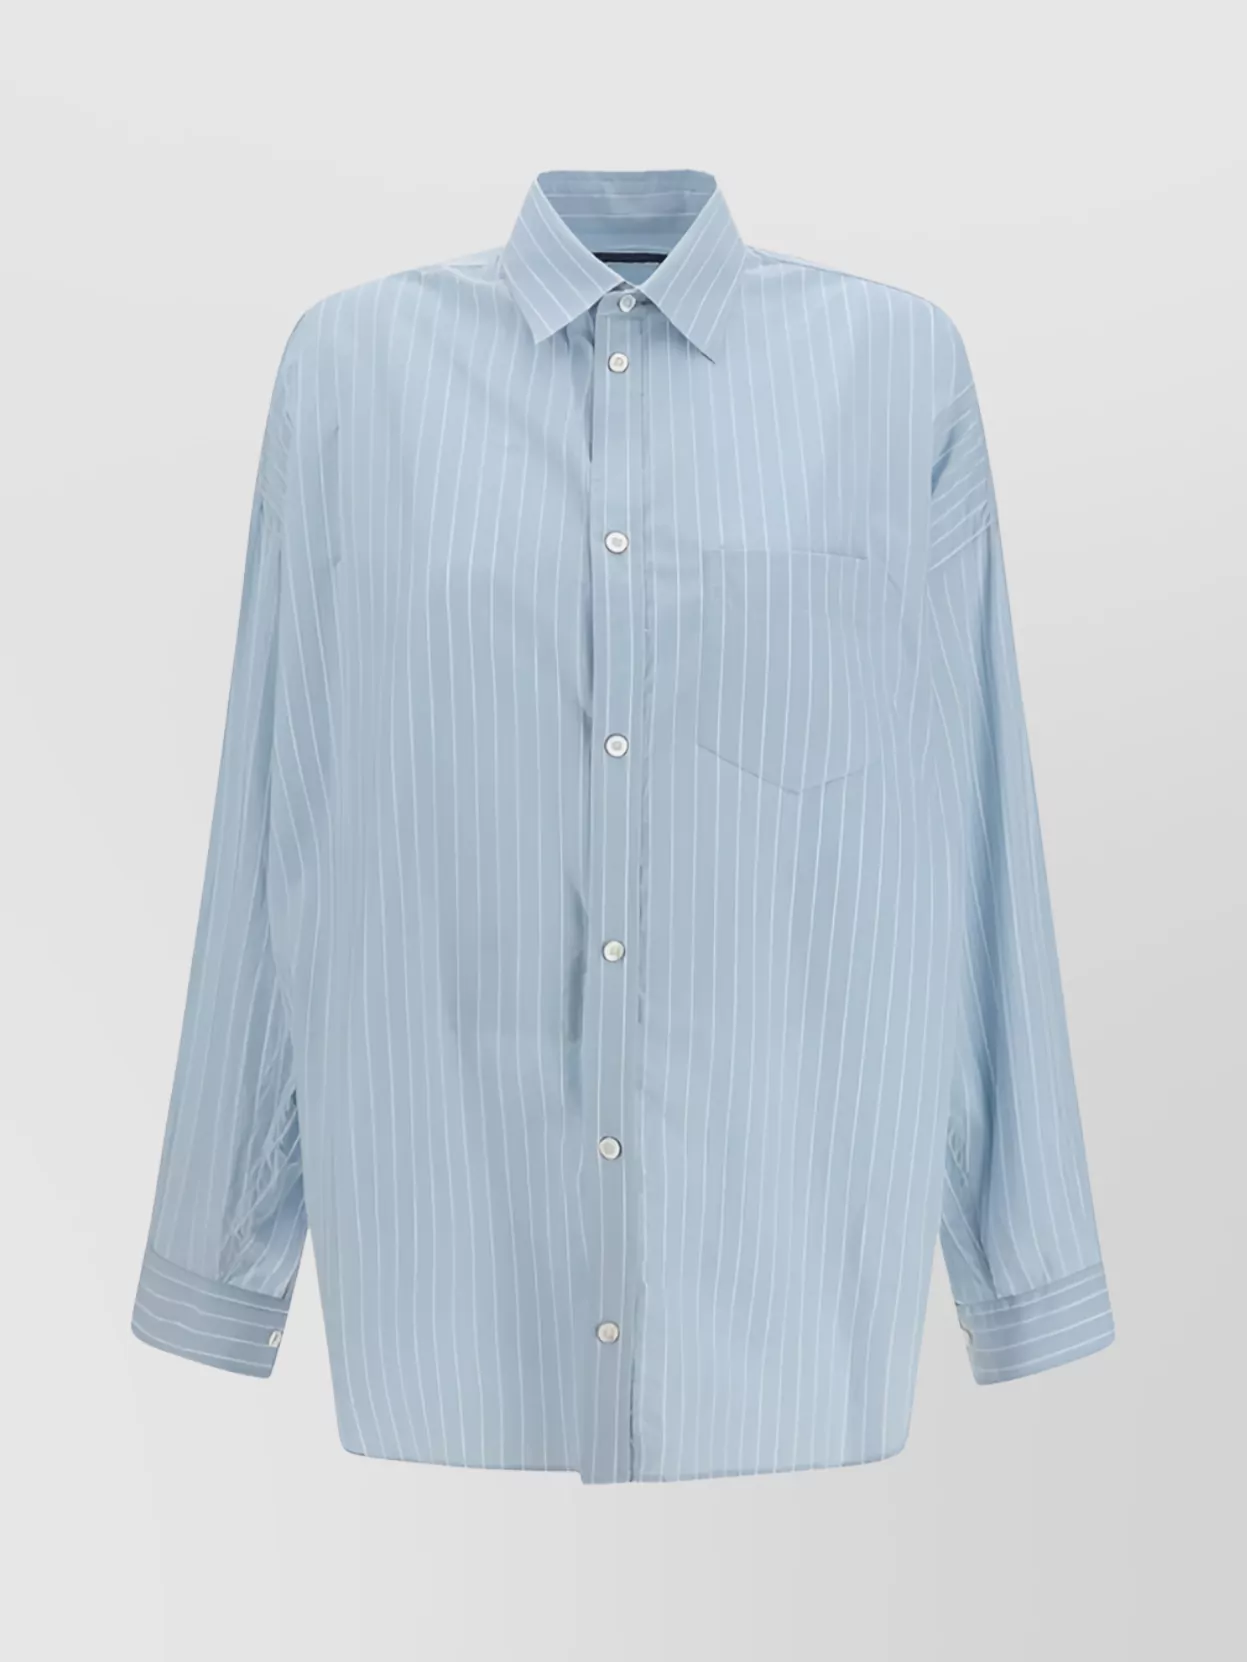 Balenciaga Striped Cotton Oversize Shirt In Blue